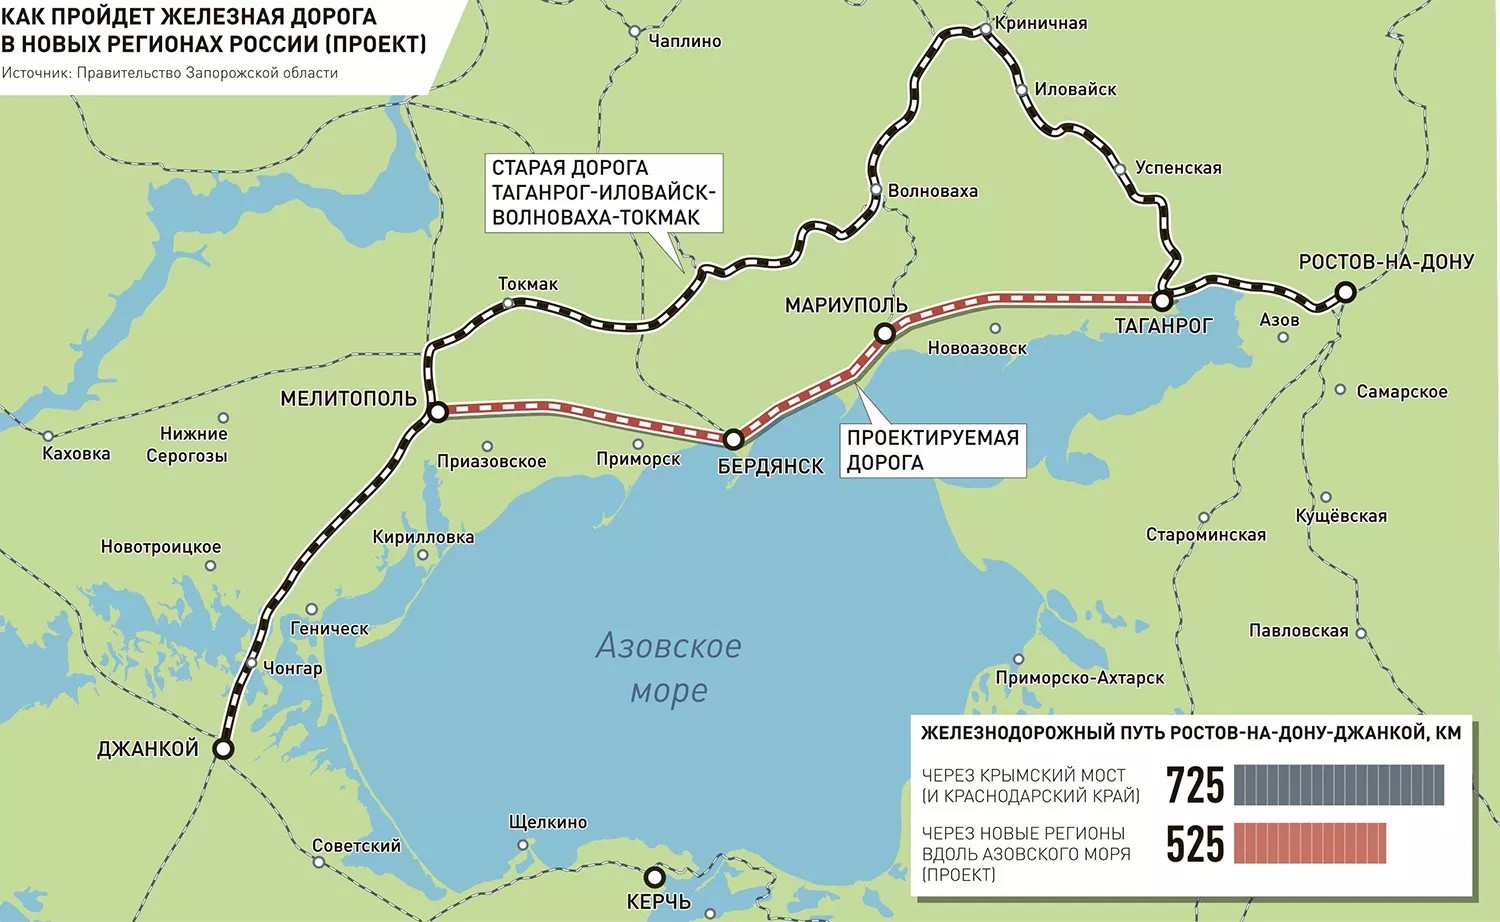 Новая дорога вдоль Азовского моря. Железная дорога вдоль Азовского моря в Крым. Схема железных дорог. Новая железная дорога в Крым.